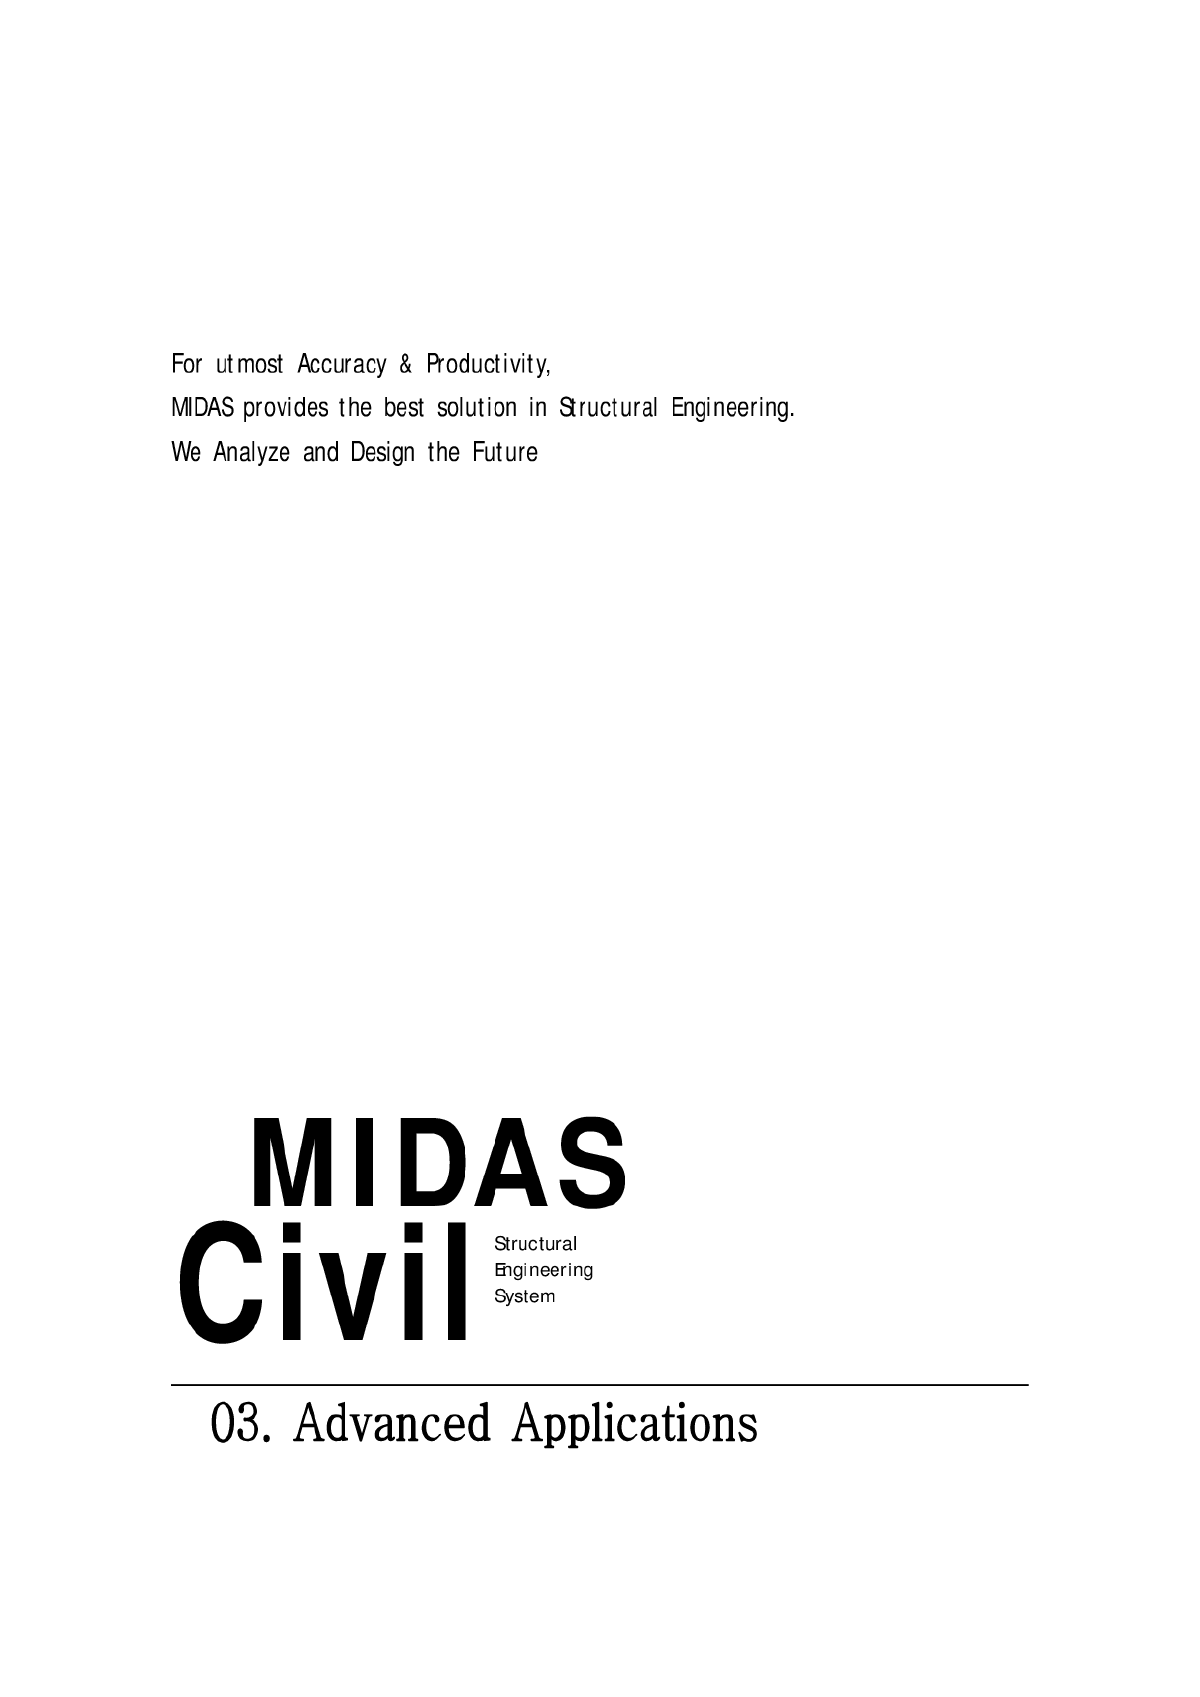  Midas Civil User's Manual Volume III - Figure 1